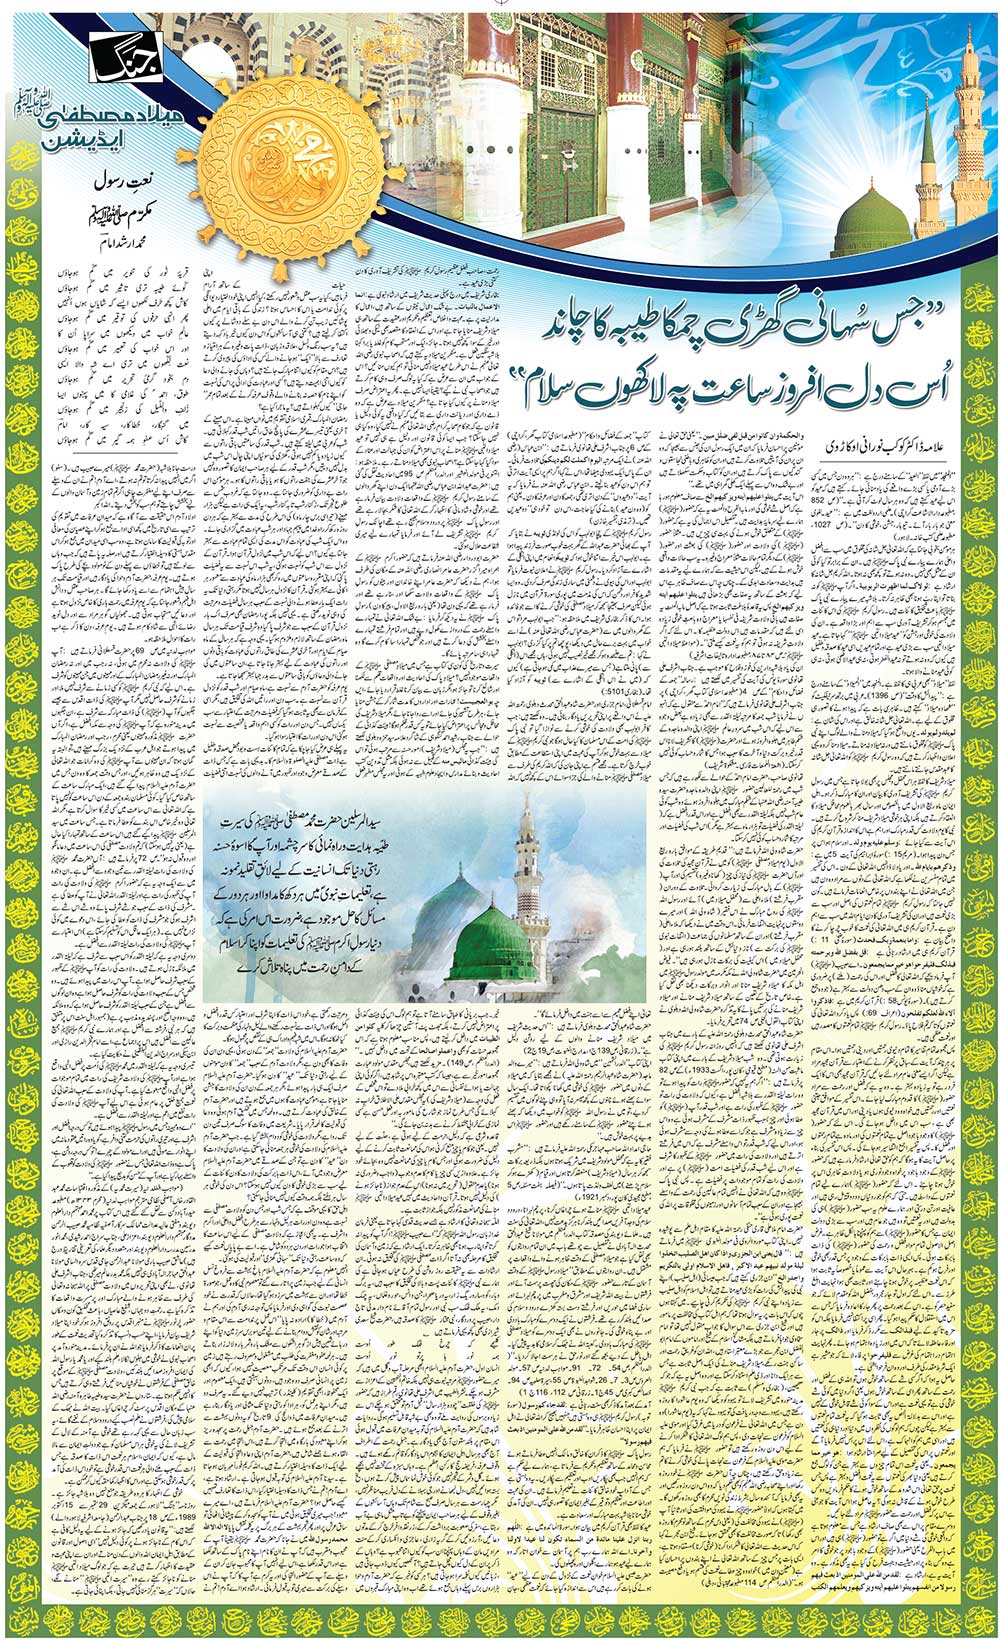 12 Rabi ul Awal speech on Eid Milad Un Nabi in Urdu is written in PDF